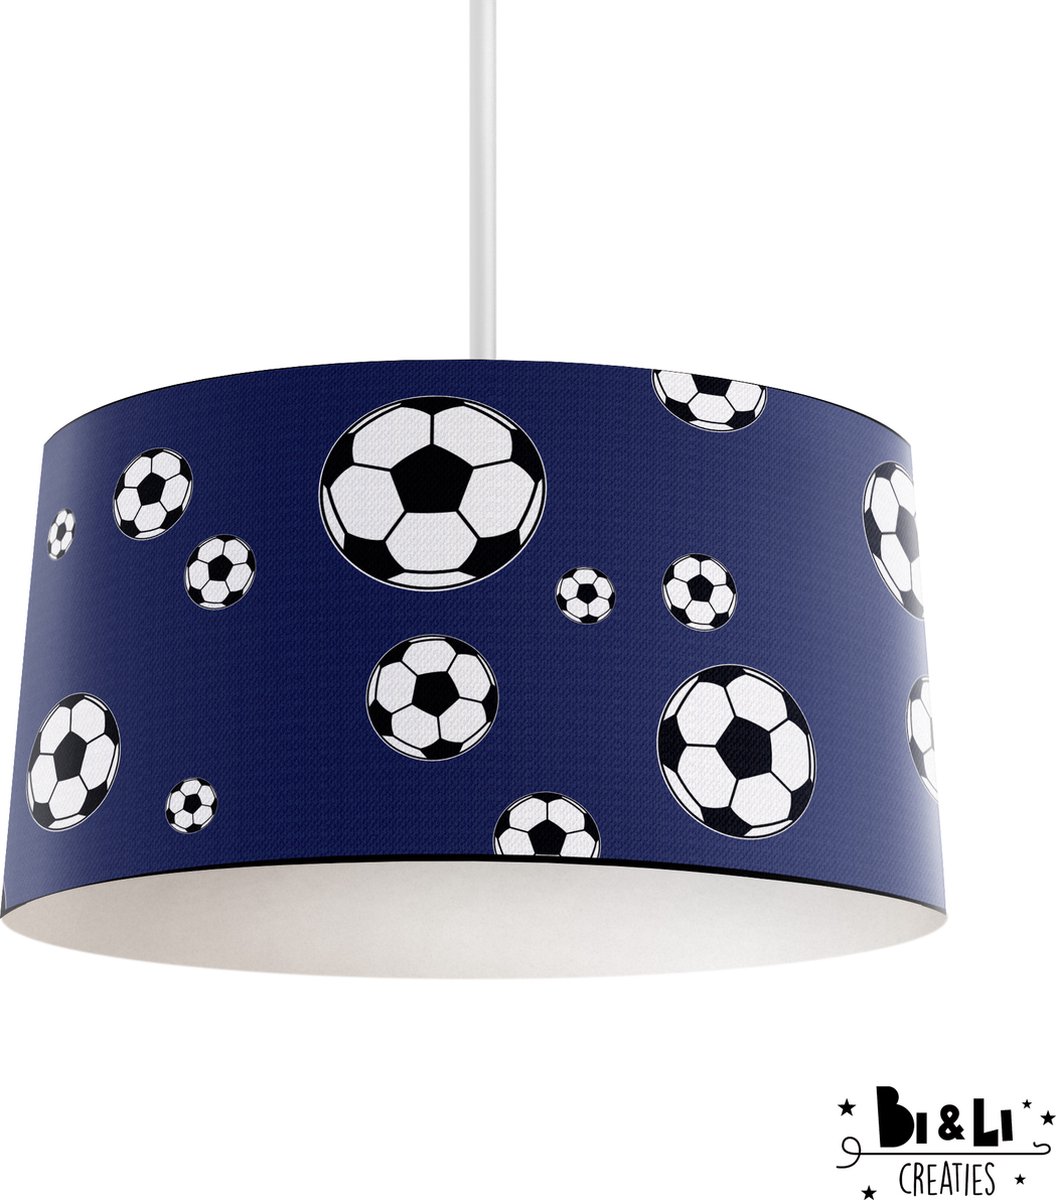 Hanglamp voetbal - kinder & babykamer - lampen - blauw - kunststof - 30x25cm - excl. lichtbron